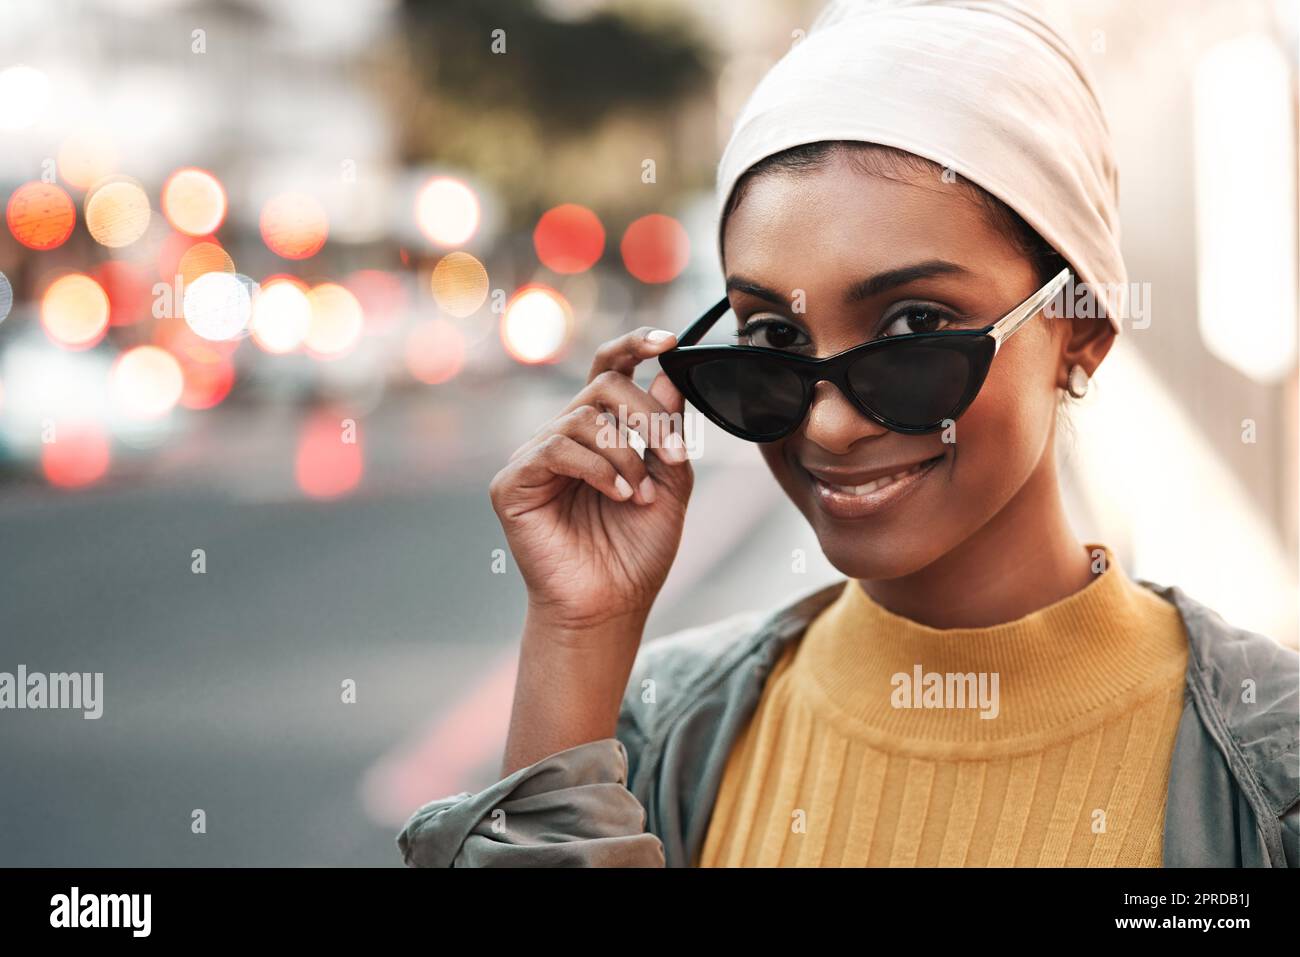 Allons voir ce site sur la route. Une jeune femme attrayante debout seule dans la ville et regardant de manière alante au-dessus de ses lunettes de soleil. Banque D'Images